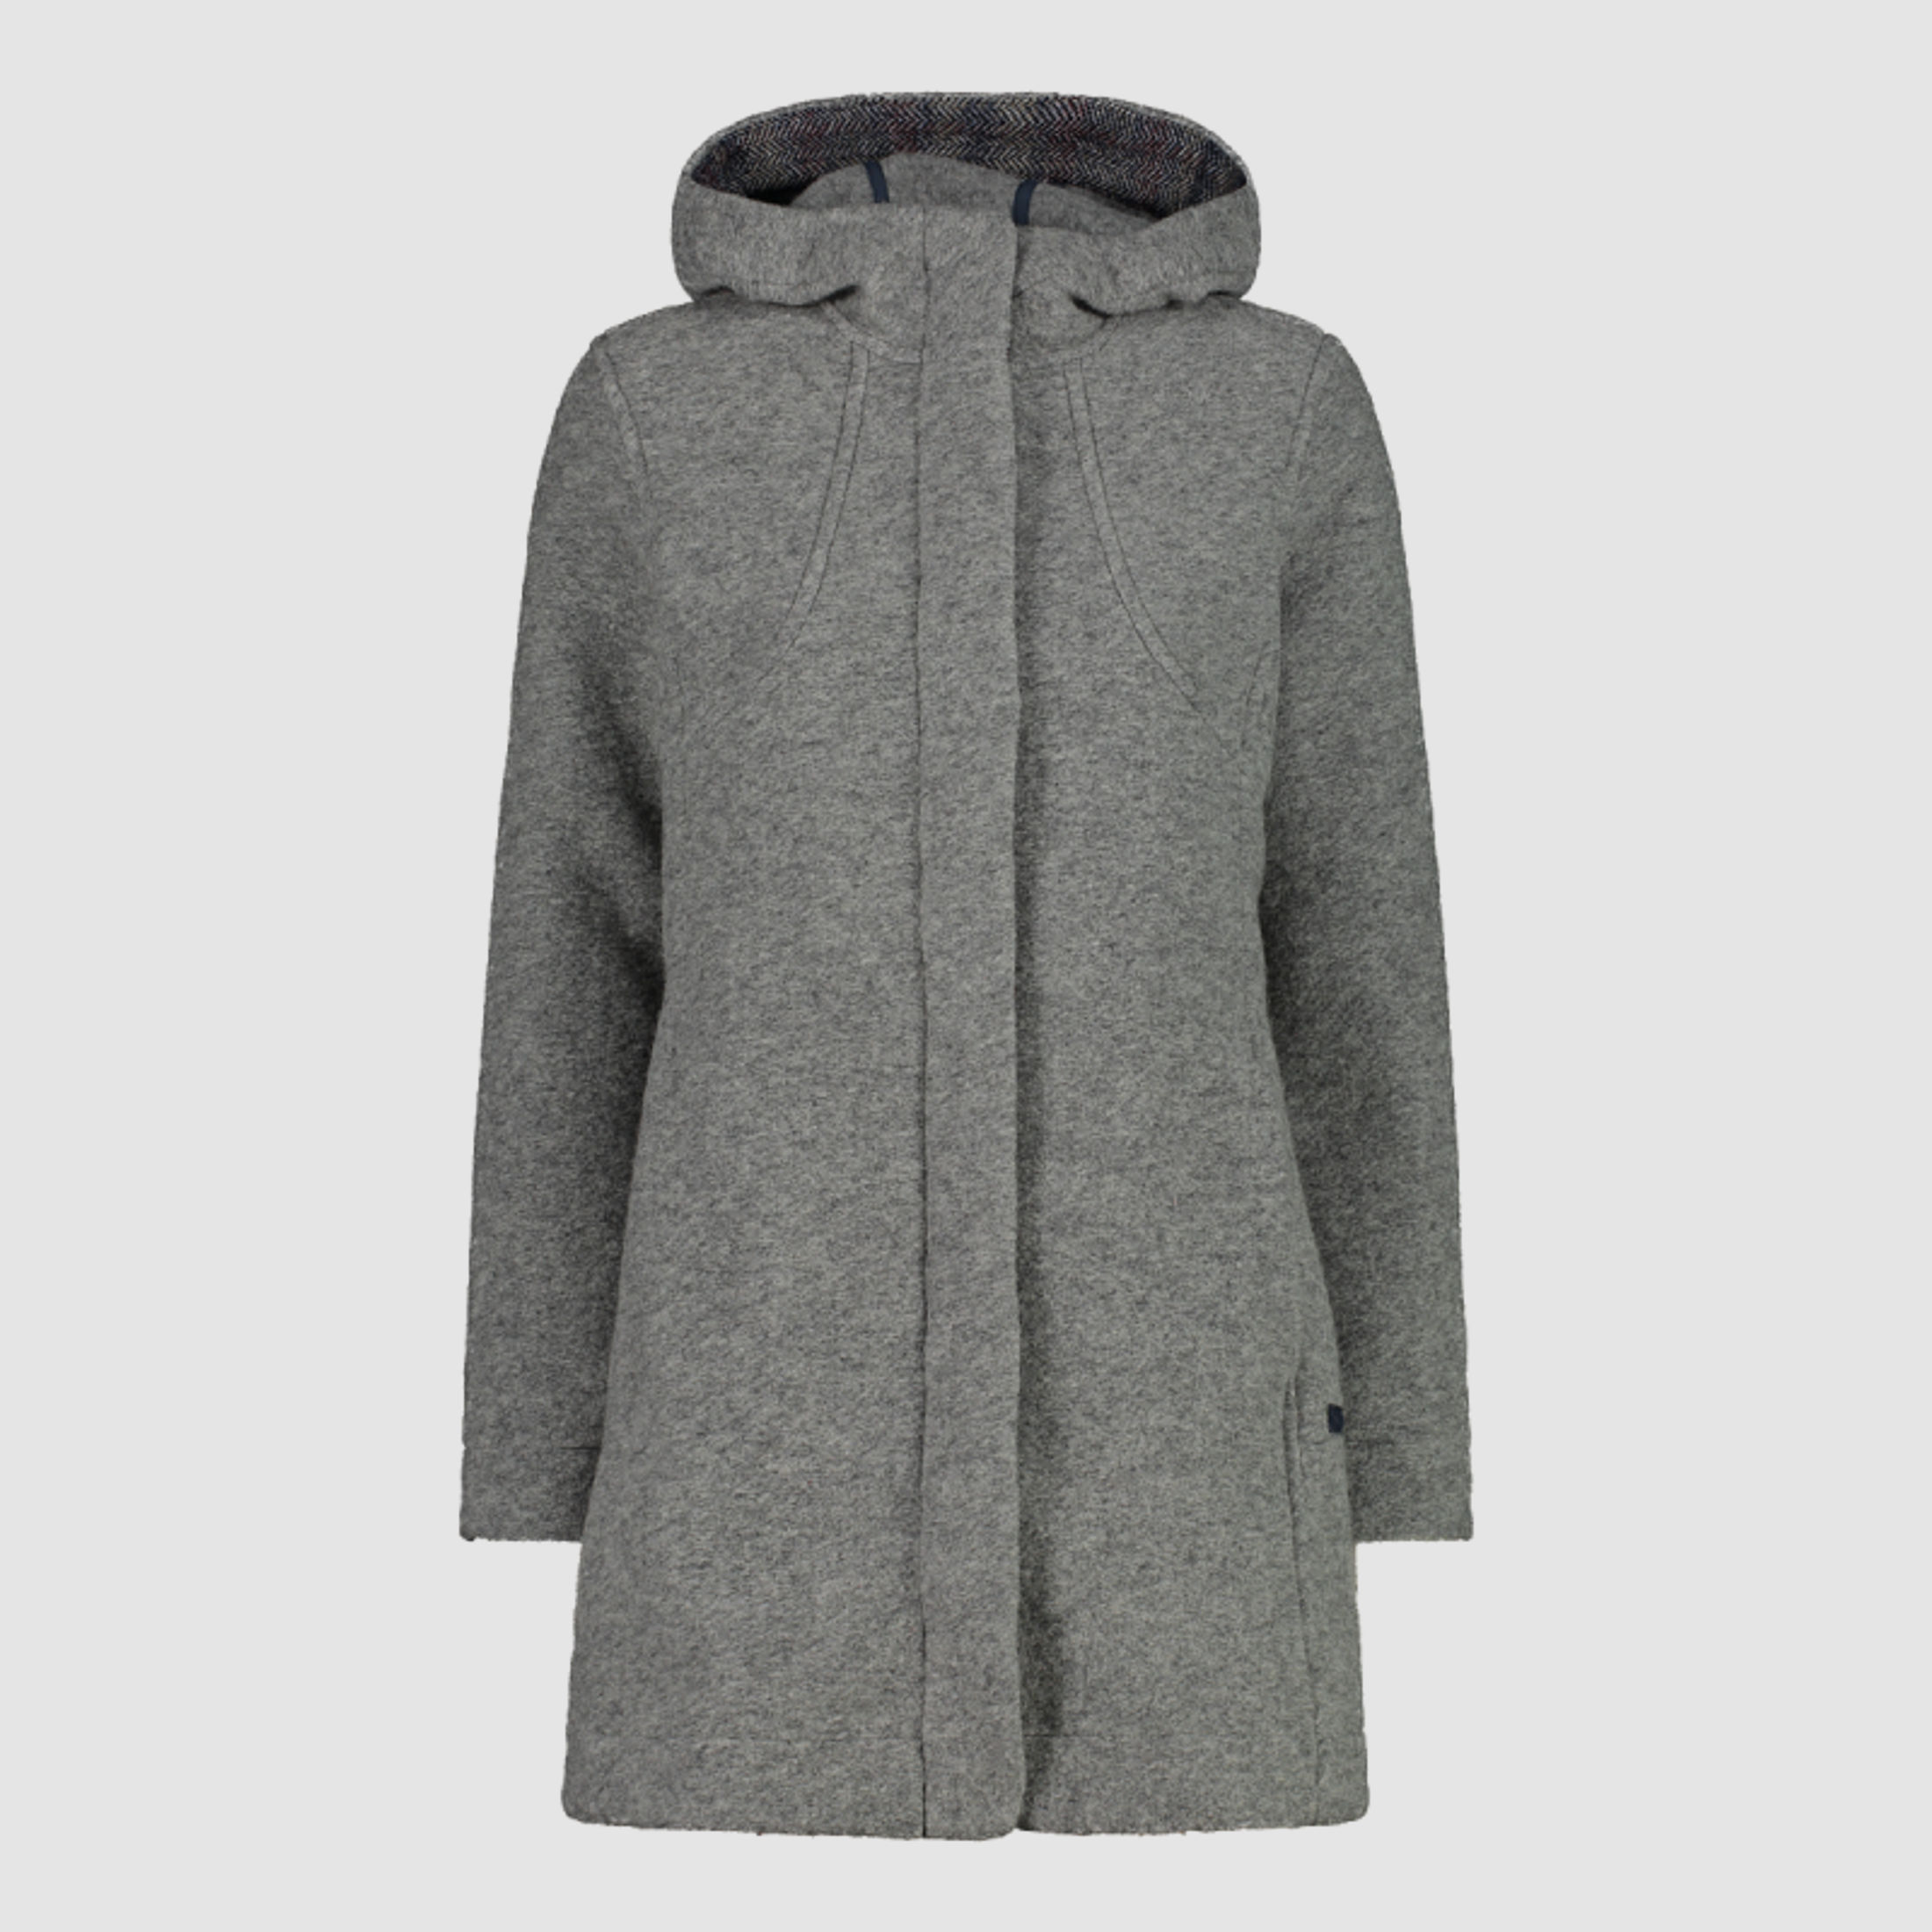 CMP Damen Jacke Coat Fix Hood Grau 36